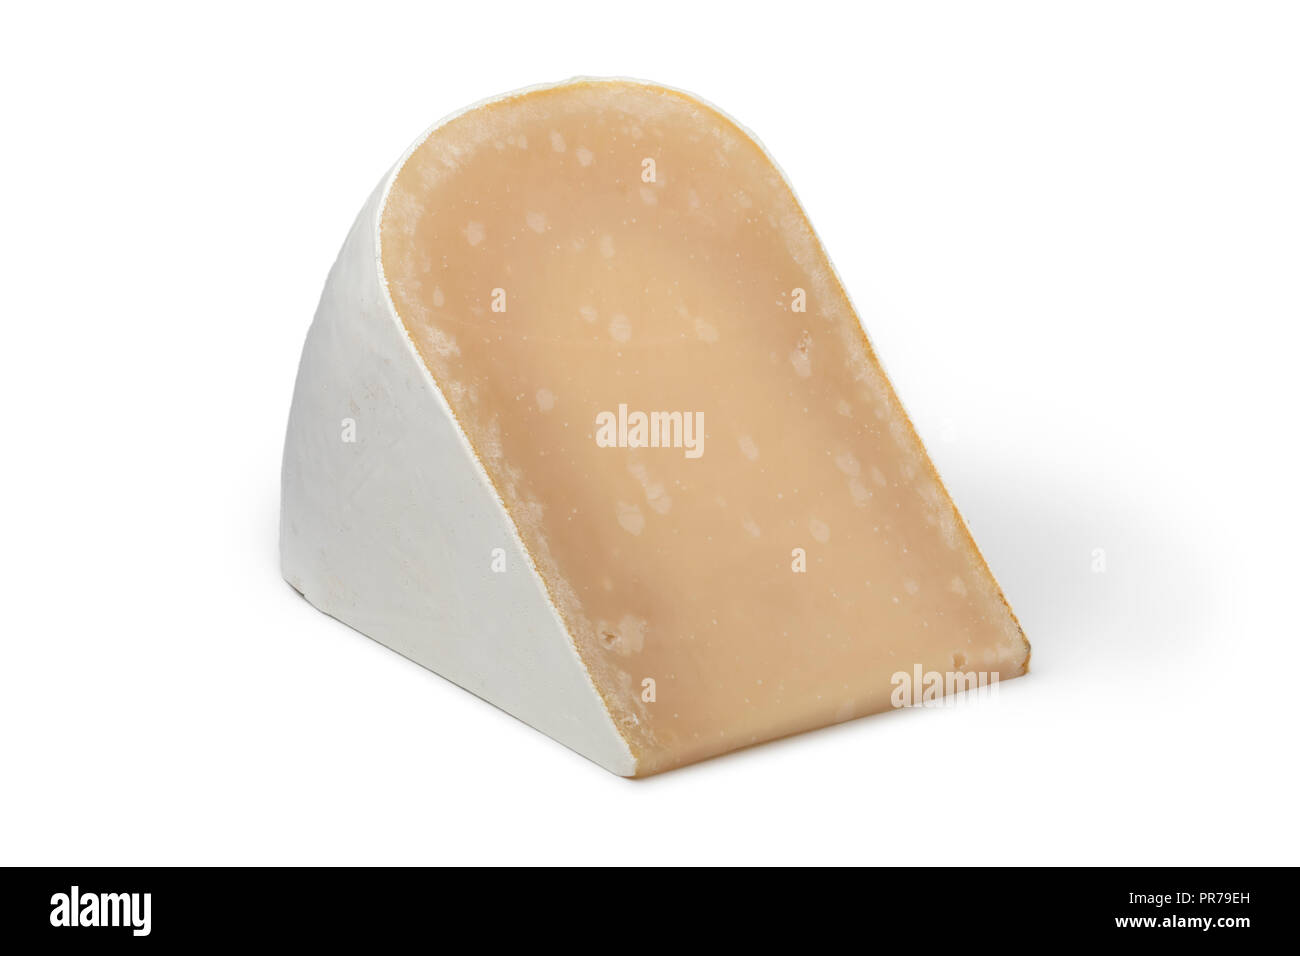 Vieux morceau de fromage de chèvre bio blancs matures isolé sur fond blanc Banque D'Images